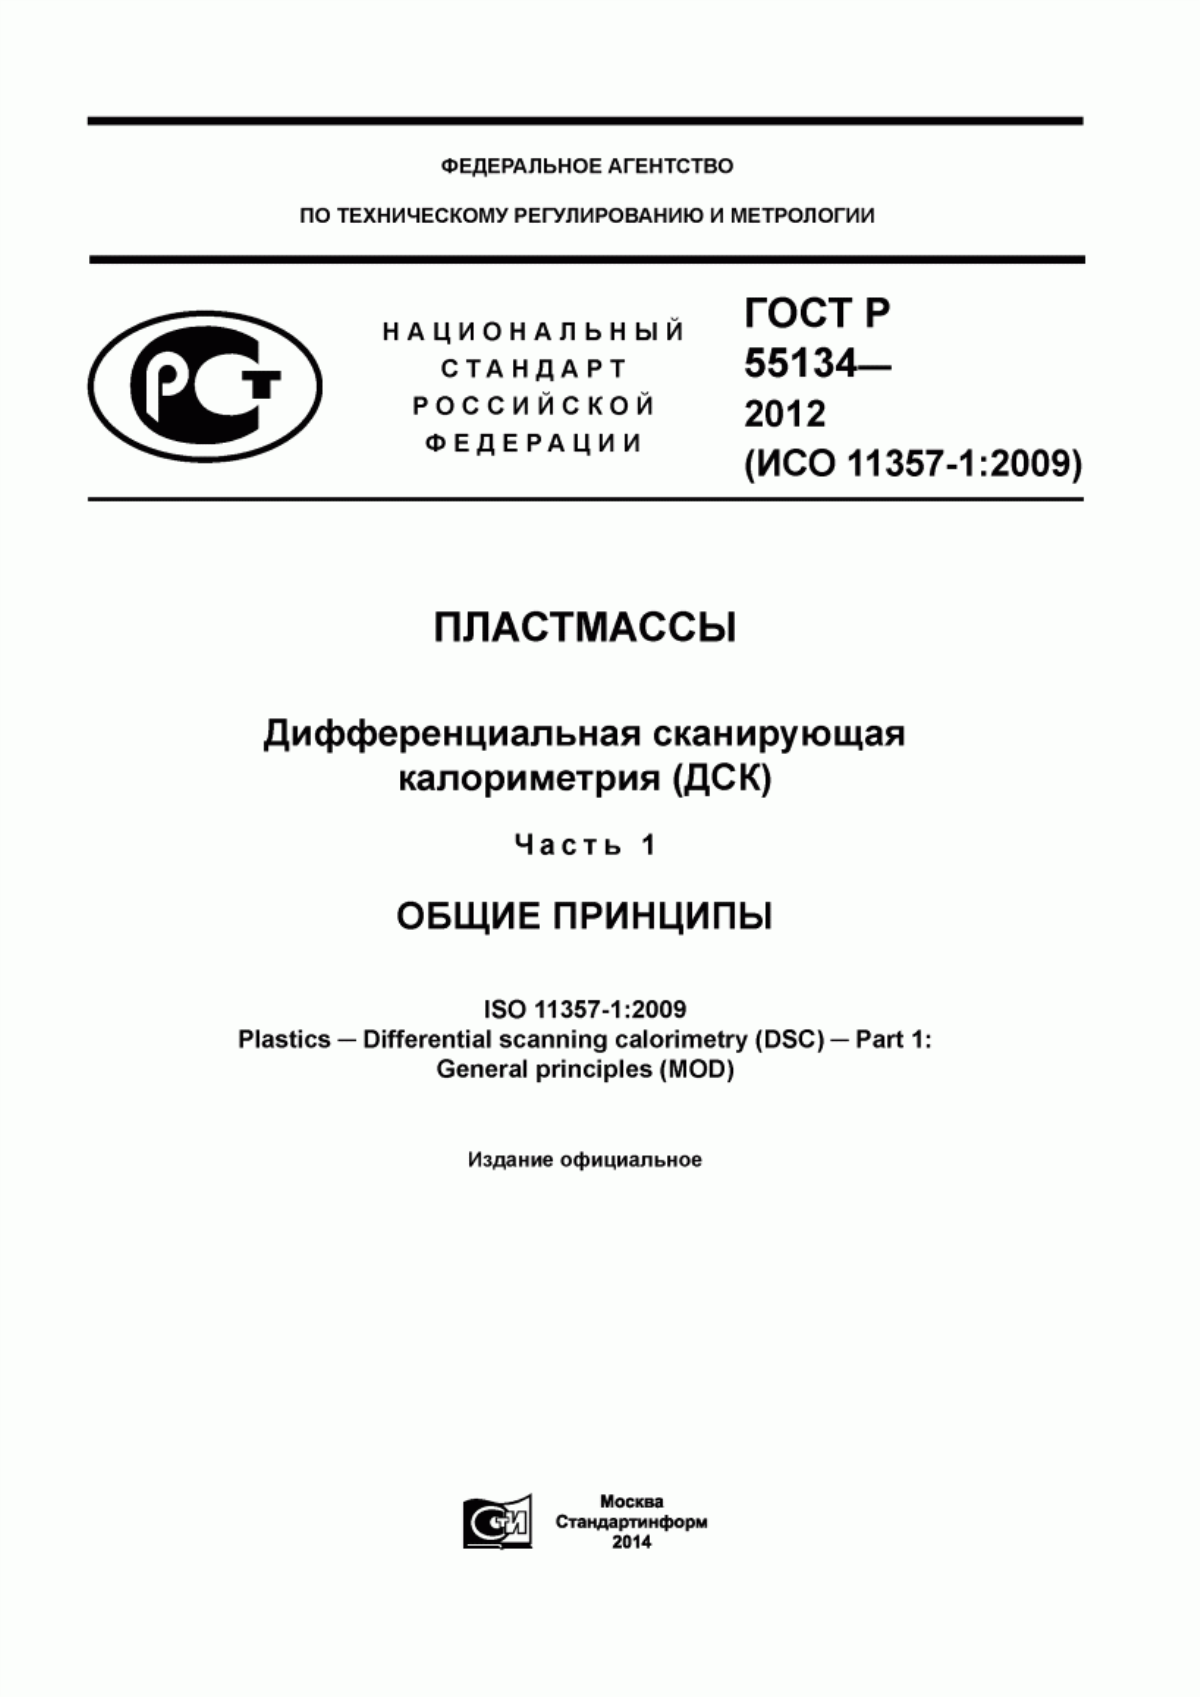 ГОСТ Р 55134-2012 Пластмассы. Дифференциальная сканирующая калориметрия (ДСК). Часть 1. Общие принципы